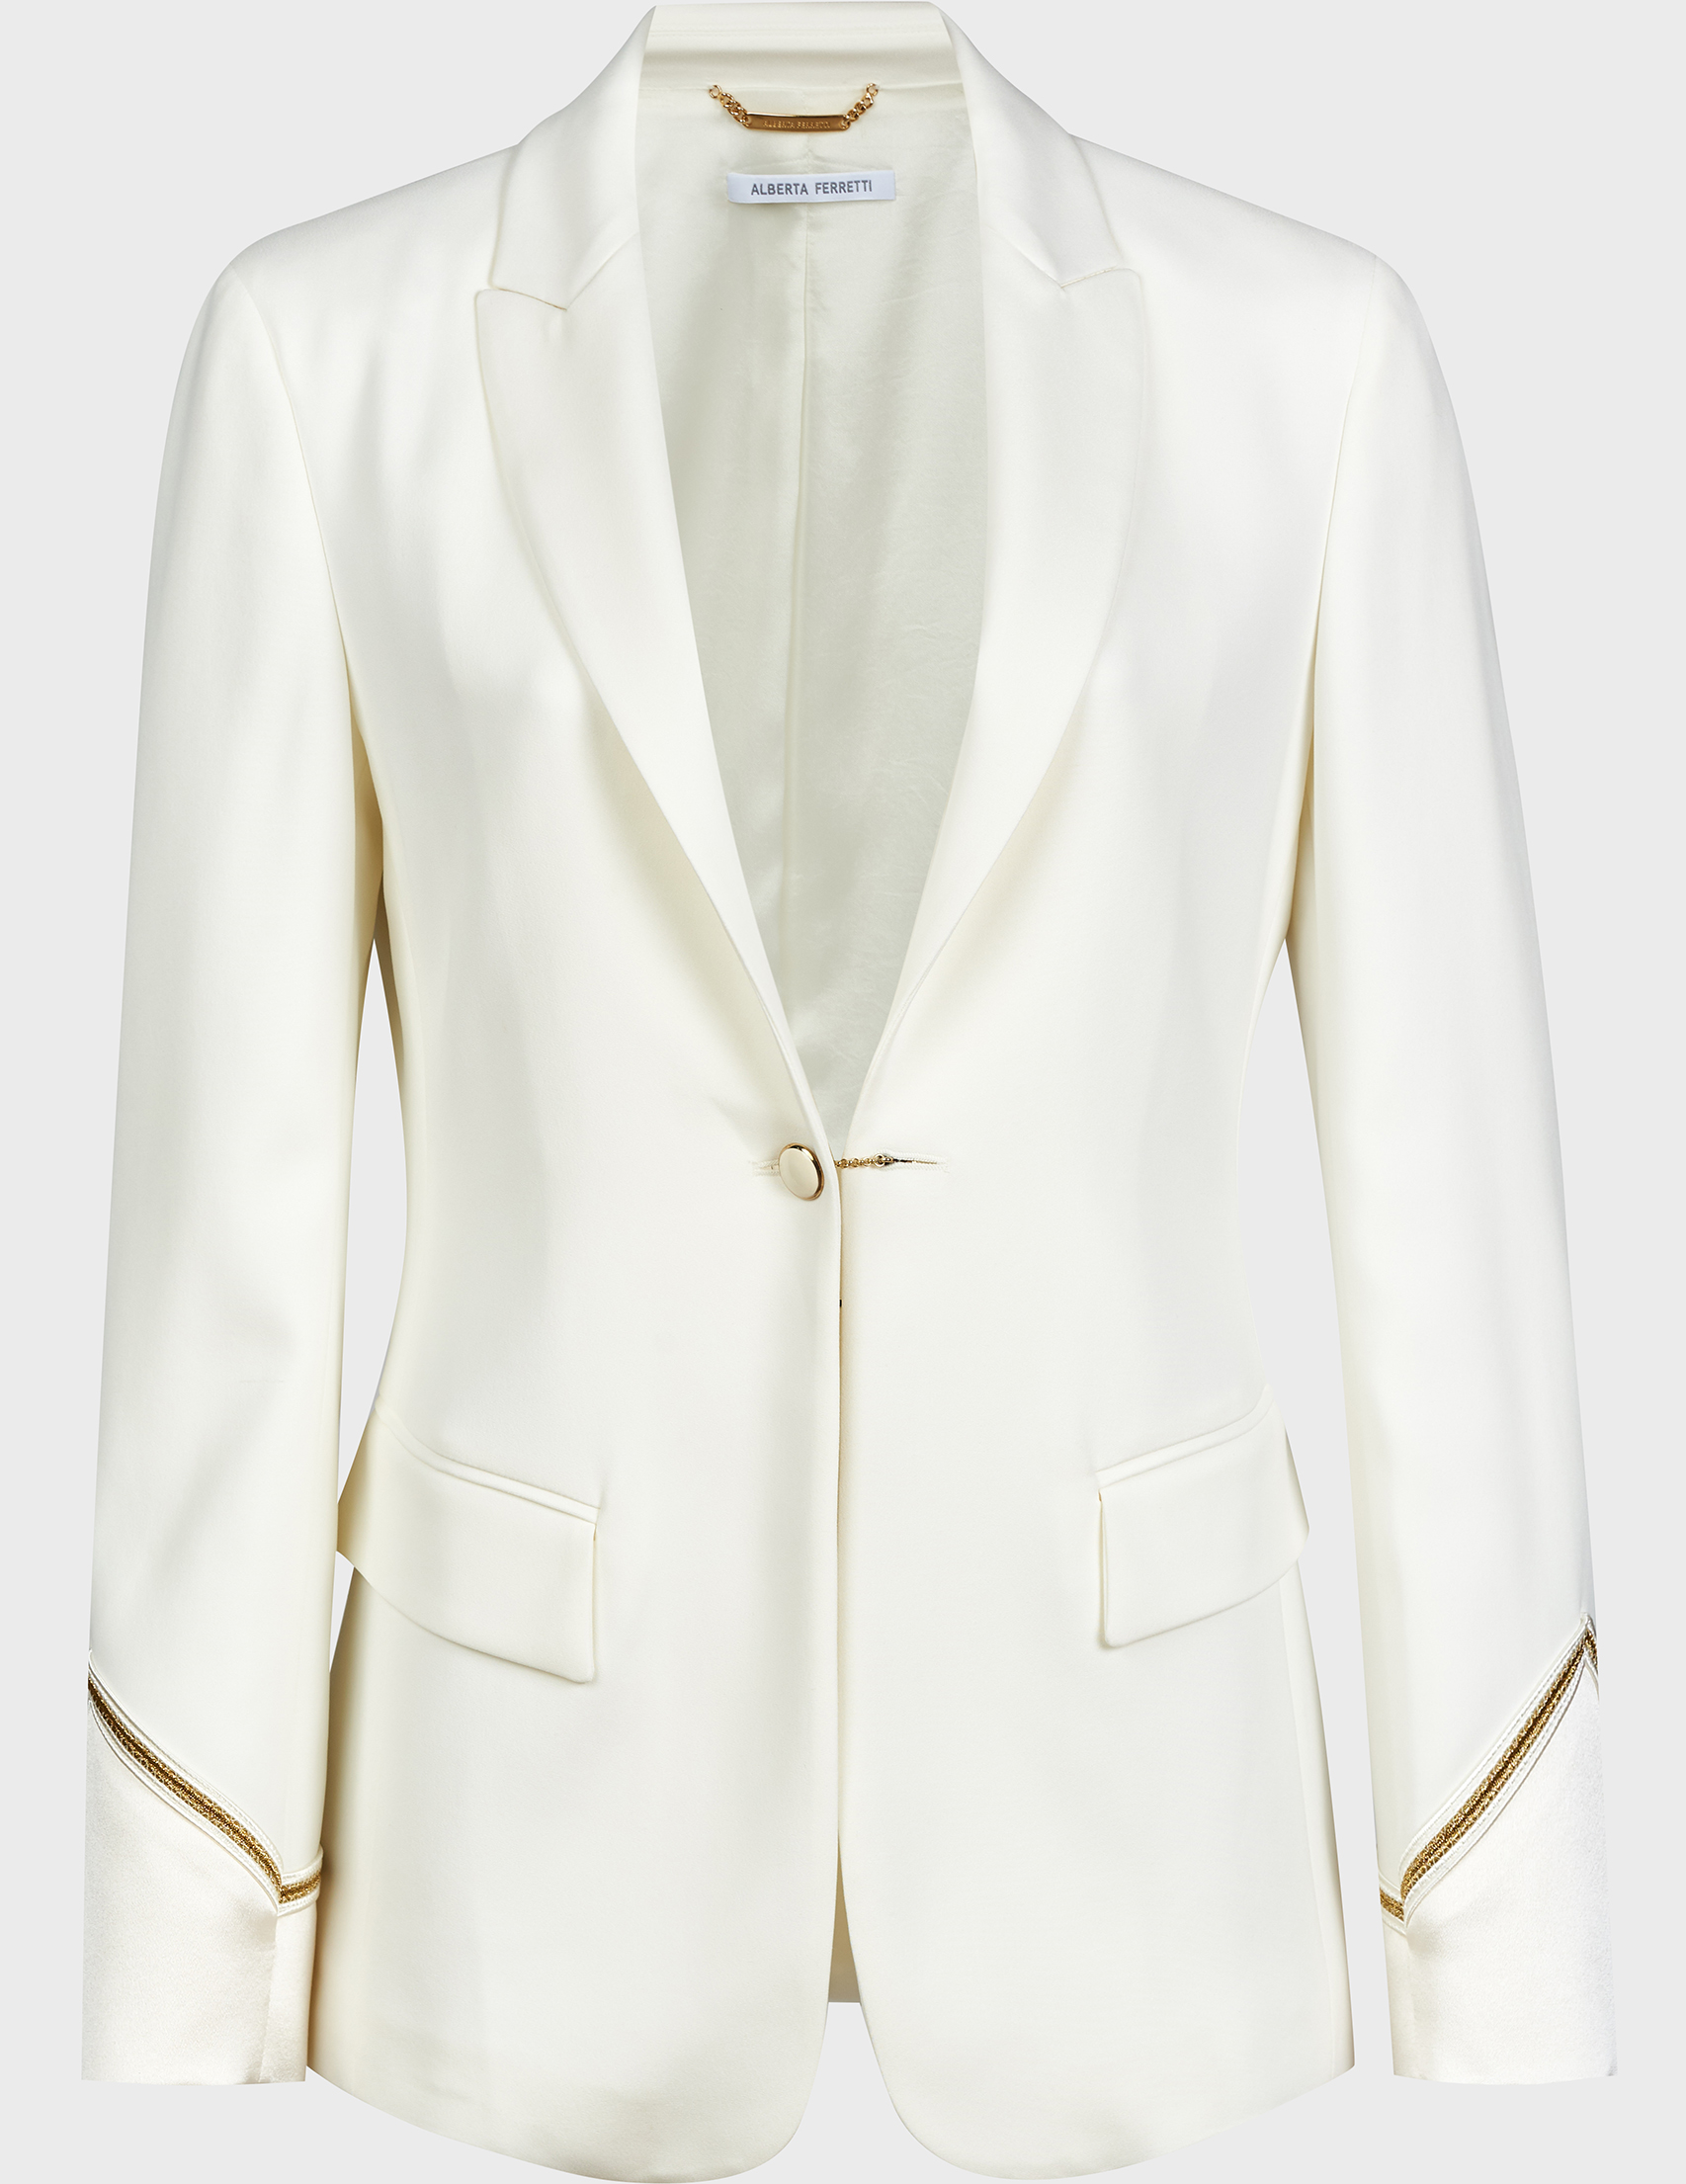 Пиджак белого цвета